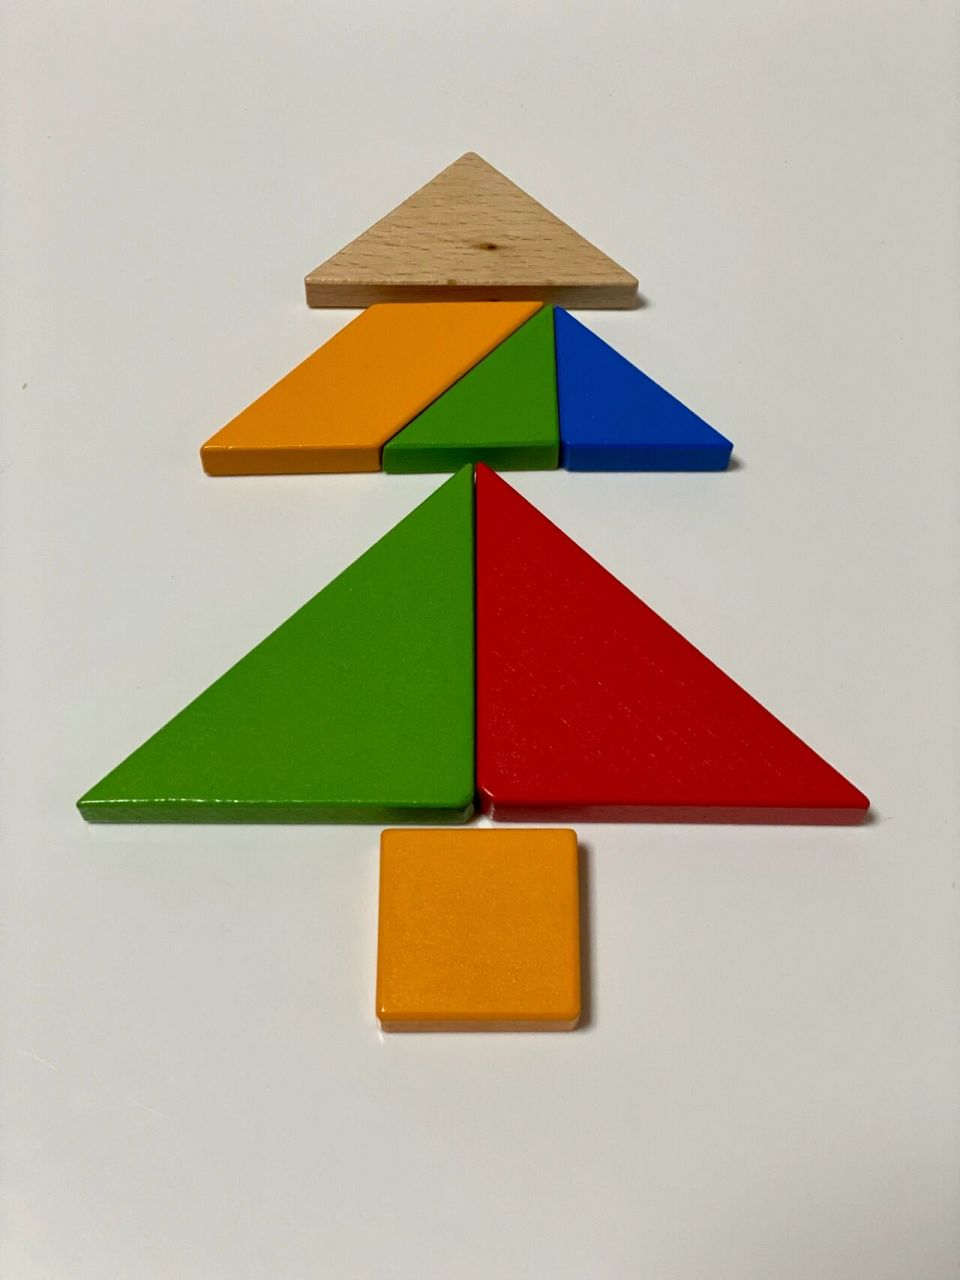 智力七巧板拼圣诞树图片